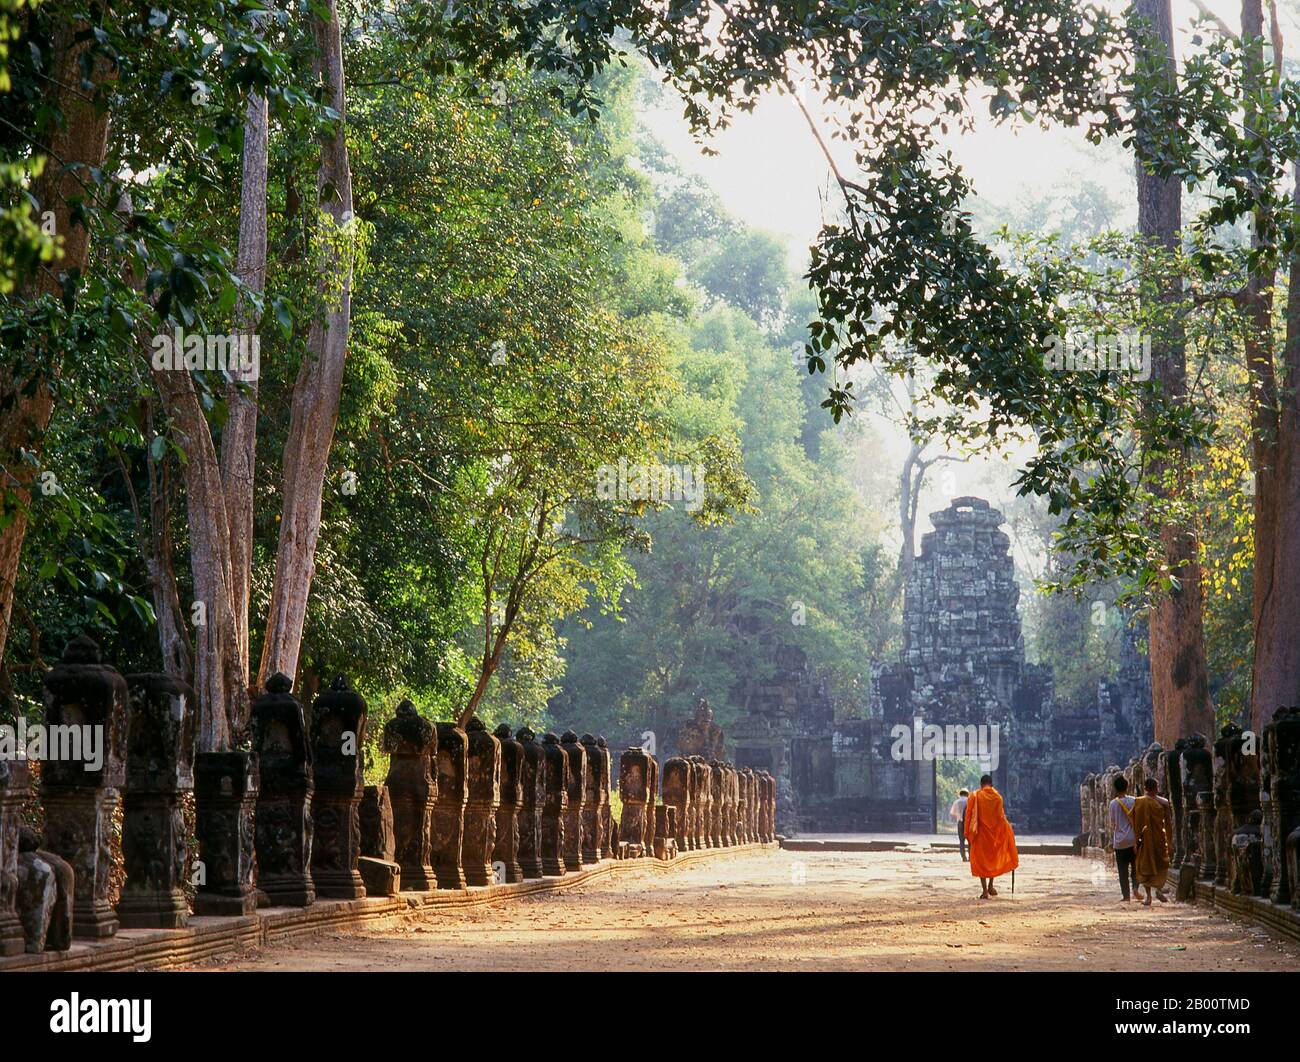 Kambodscha: Ein Mönch geht in Richtung der westlichen Gopura, Preah Khan, Angkor. Preah Khan (Tempel des Heiligen Schwertes) wurde im späten 12. Jahrhundert (1191) von Jayavarman VII. Erbaut und liegt nördlich von Angkor Thom. Der Tempel wurde auf dem Aufstellungsort von Jayavarman VII Sieg über dem eindringenden Chams 1191 errichtet. Es war das Zentrum einer bedeutenden Organisation mit fast 100,000 Beamten und Bediensteten. Es diente als buddhistische Universität zu einer Zeit. Die primäre Gottheit des Tempels ist der boddhisatva Avalokiteshvara in Form von Jayavarmans Vater. Stockfoto